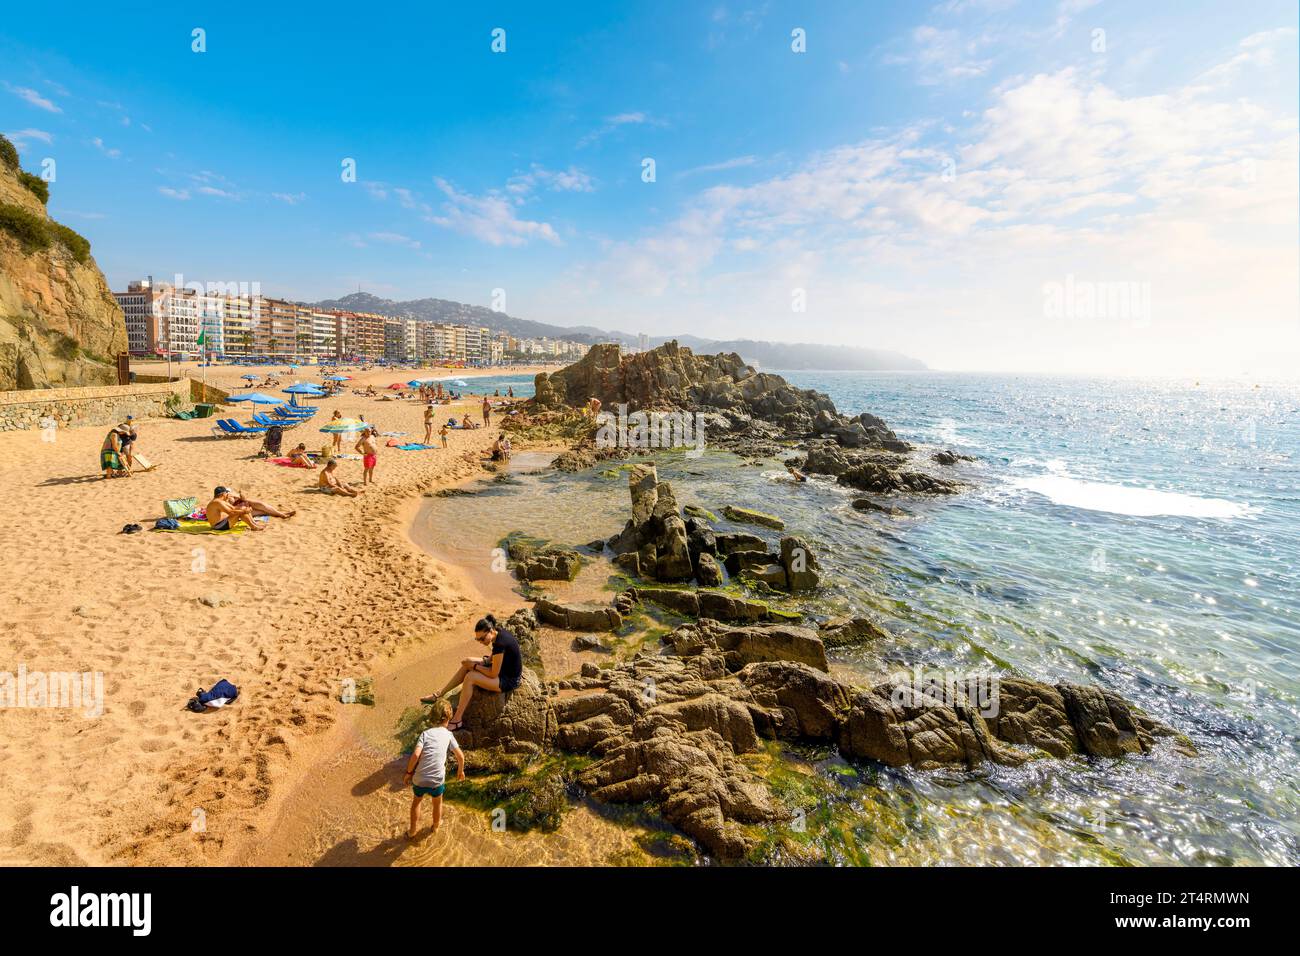 Les Espagnols et les touristes profitent d'une journée d'été sur la grande plage de sable Playa Grande de la station balnéaire espagnole de Lloret de Mar, sur la côte de la Costa Brava. Banque D'Images